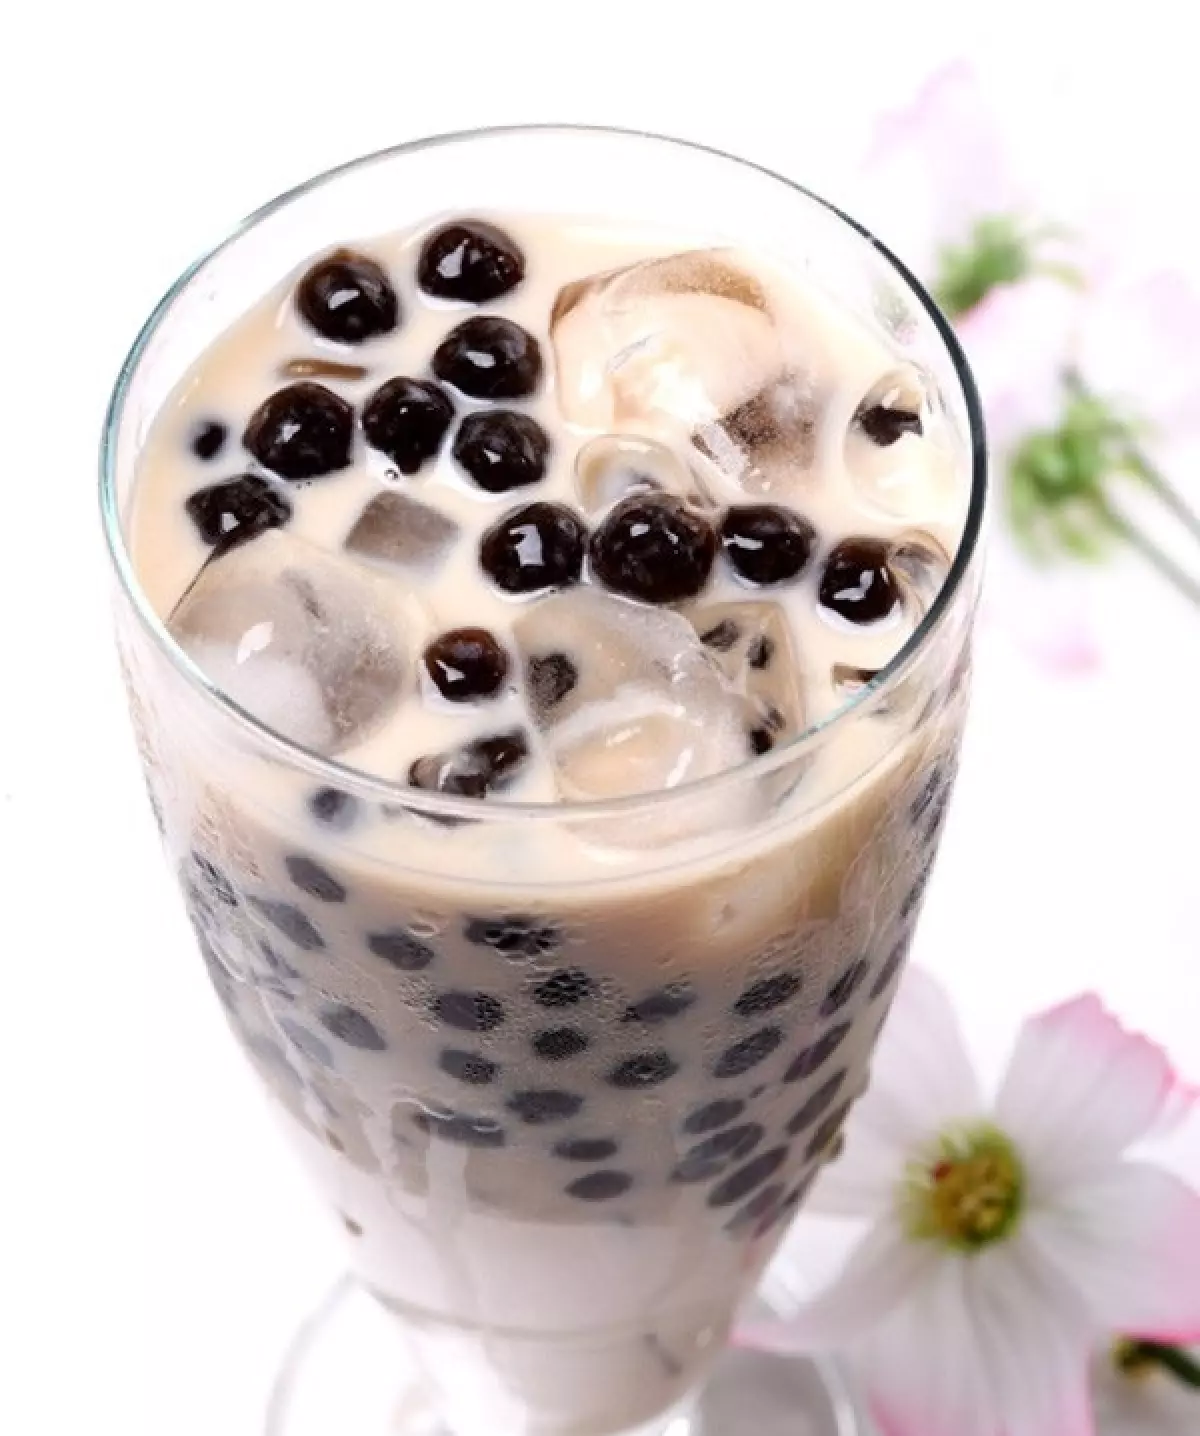 Các chuyên gia dinh dưỡng khuyến cáo: Trong trà sữa có chứa nhiều kem béo thực vật, một chất gây hại cho sự phát triển của trẻ. Ảnh minh họa